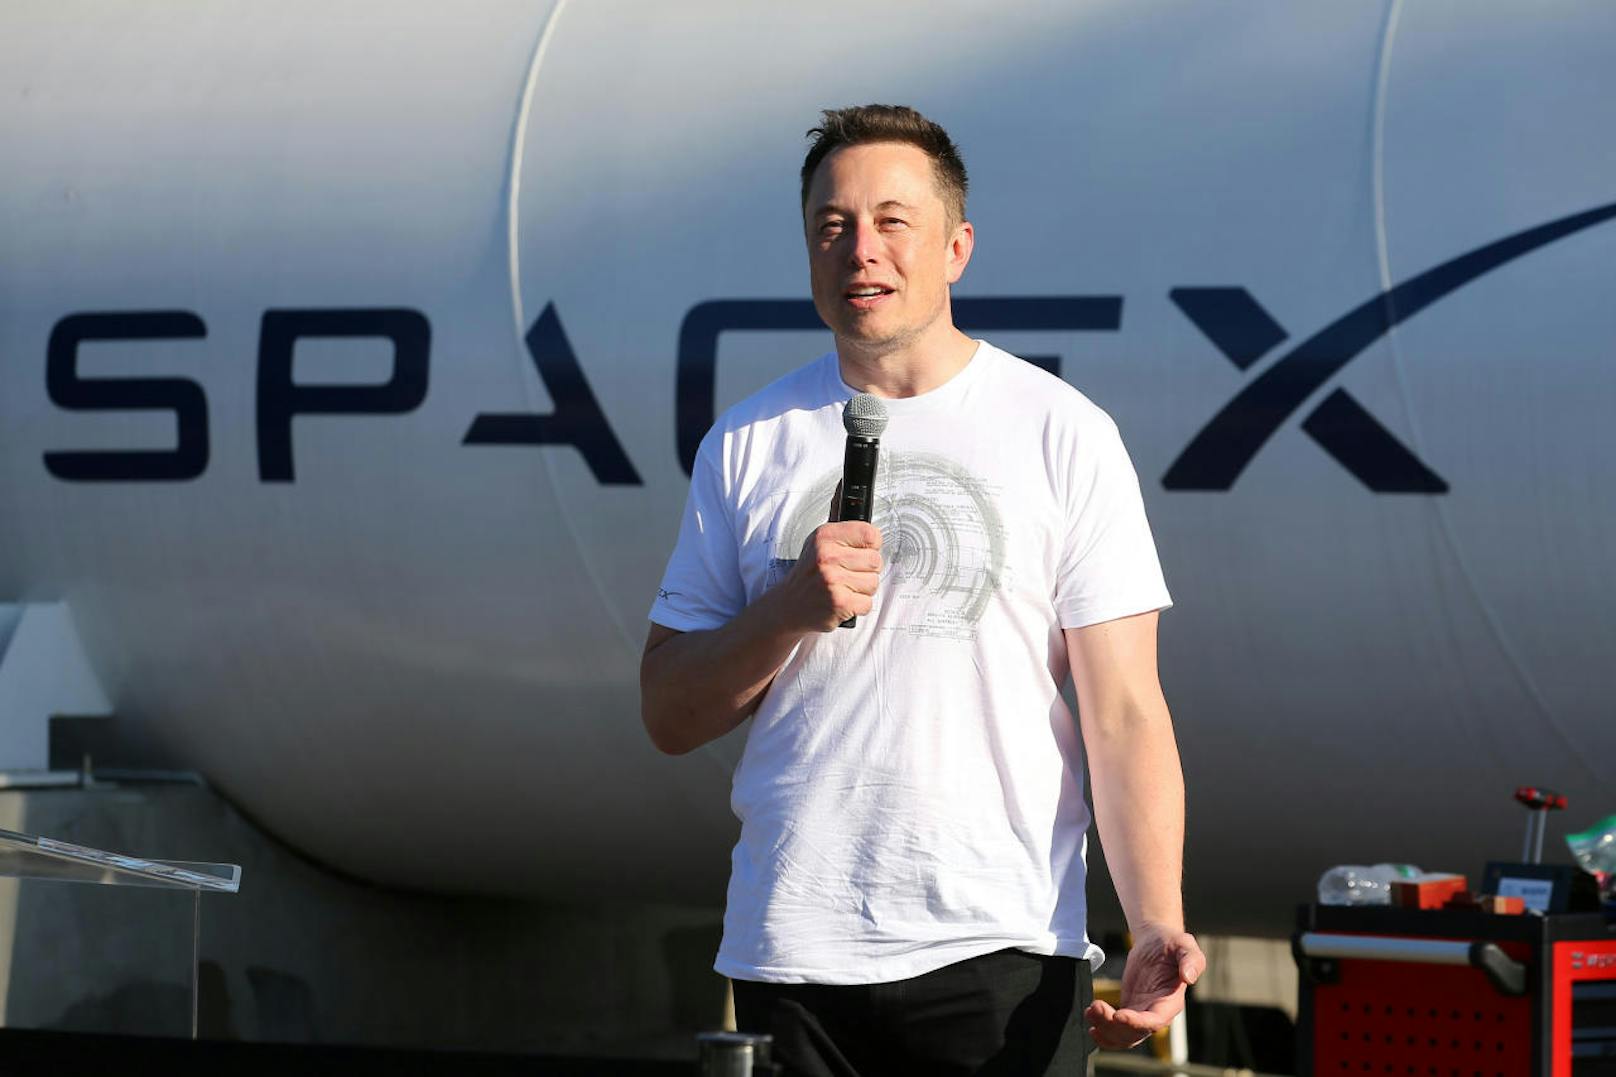 Elon Musk (48) ist ein aus Südafrika stammender kanadisch-US-amerikanischer Unternehmer und Investor.